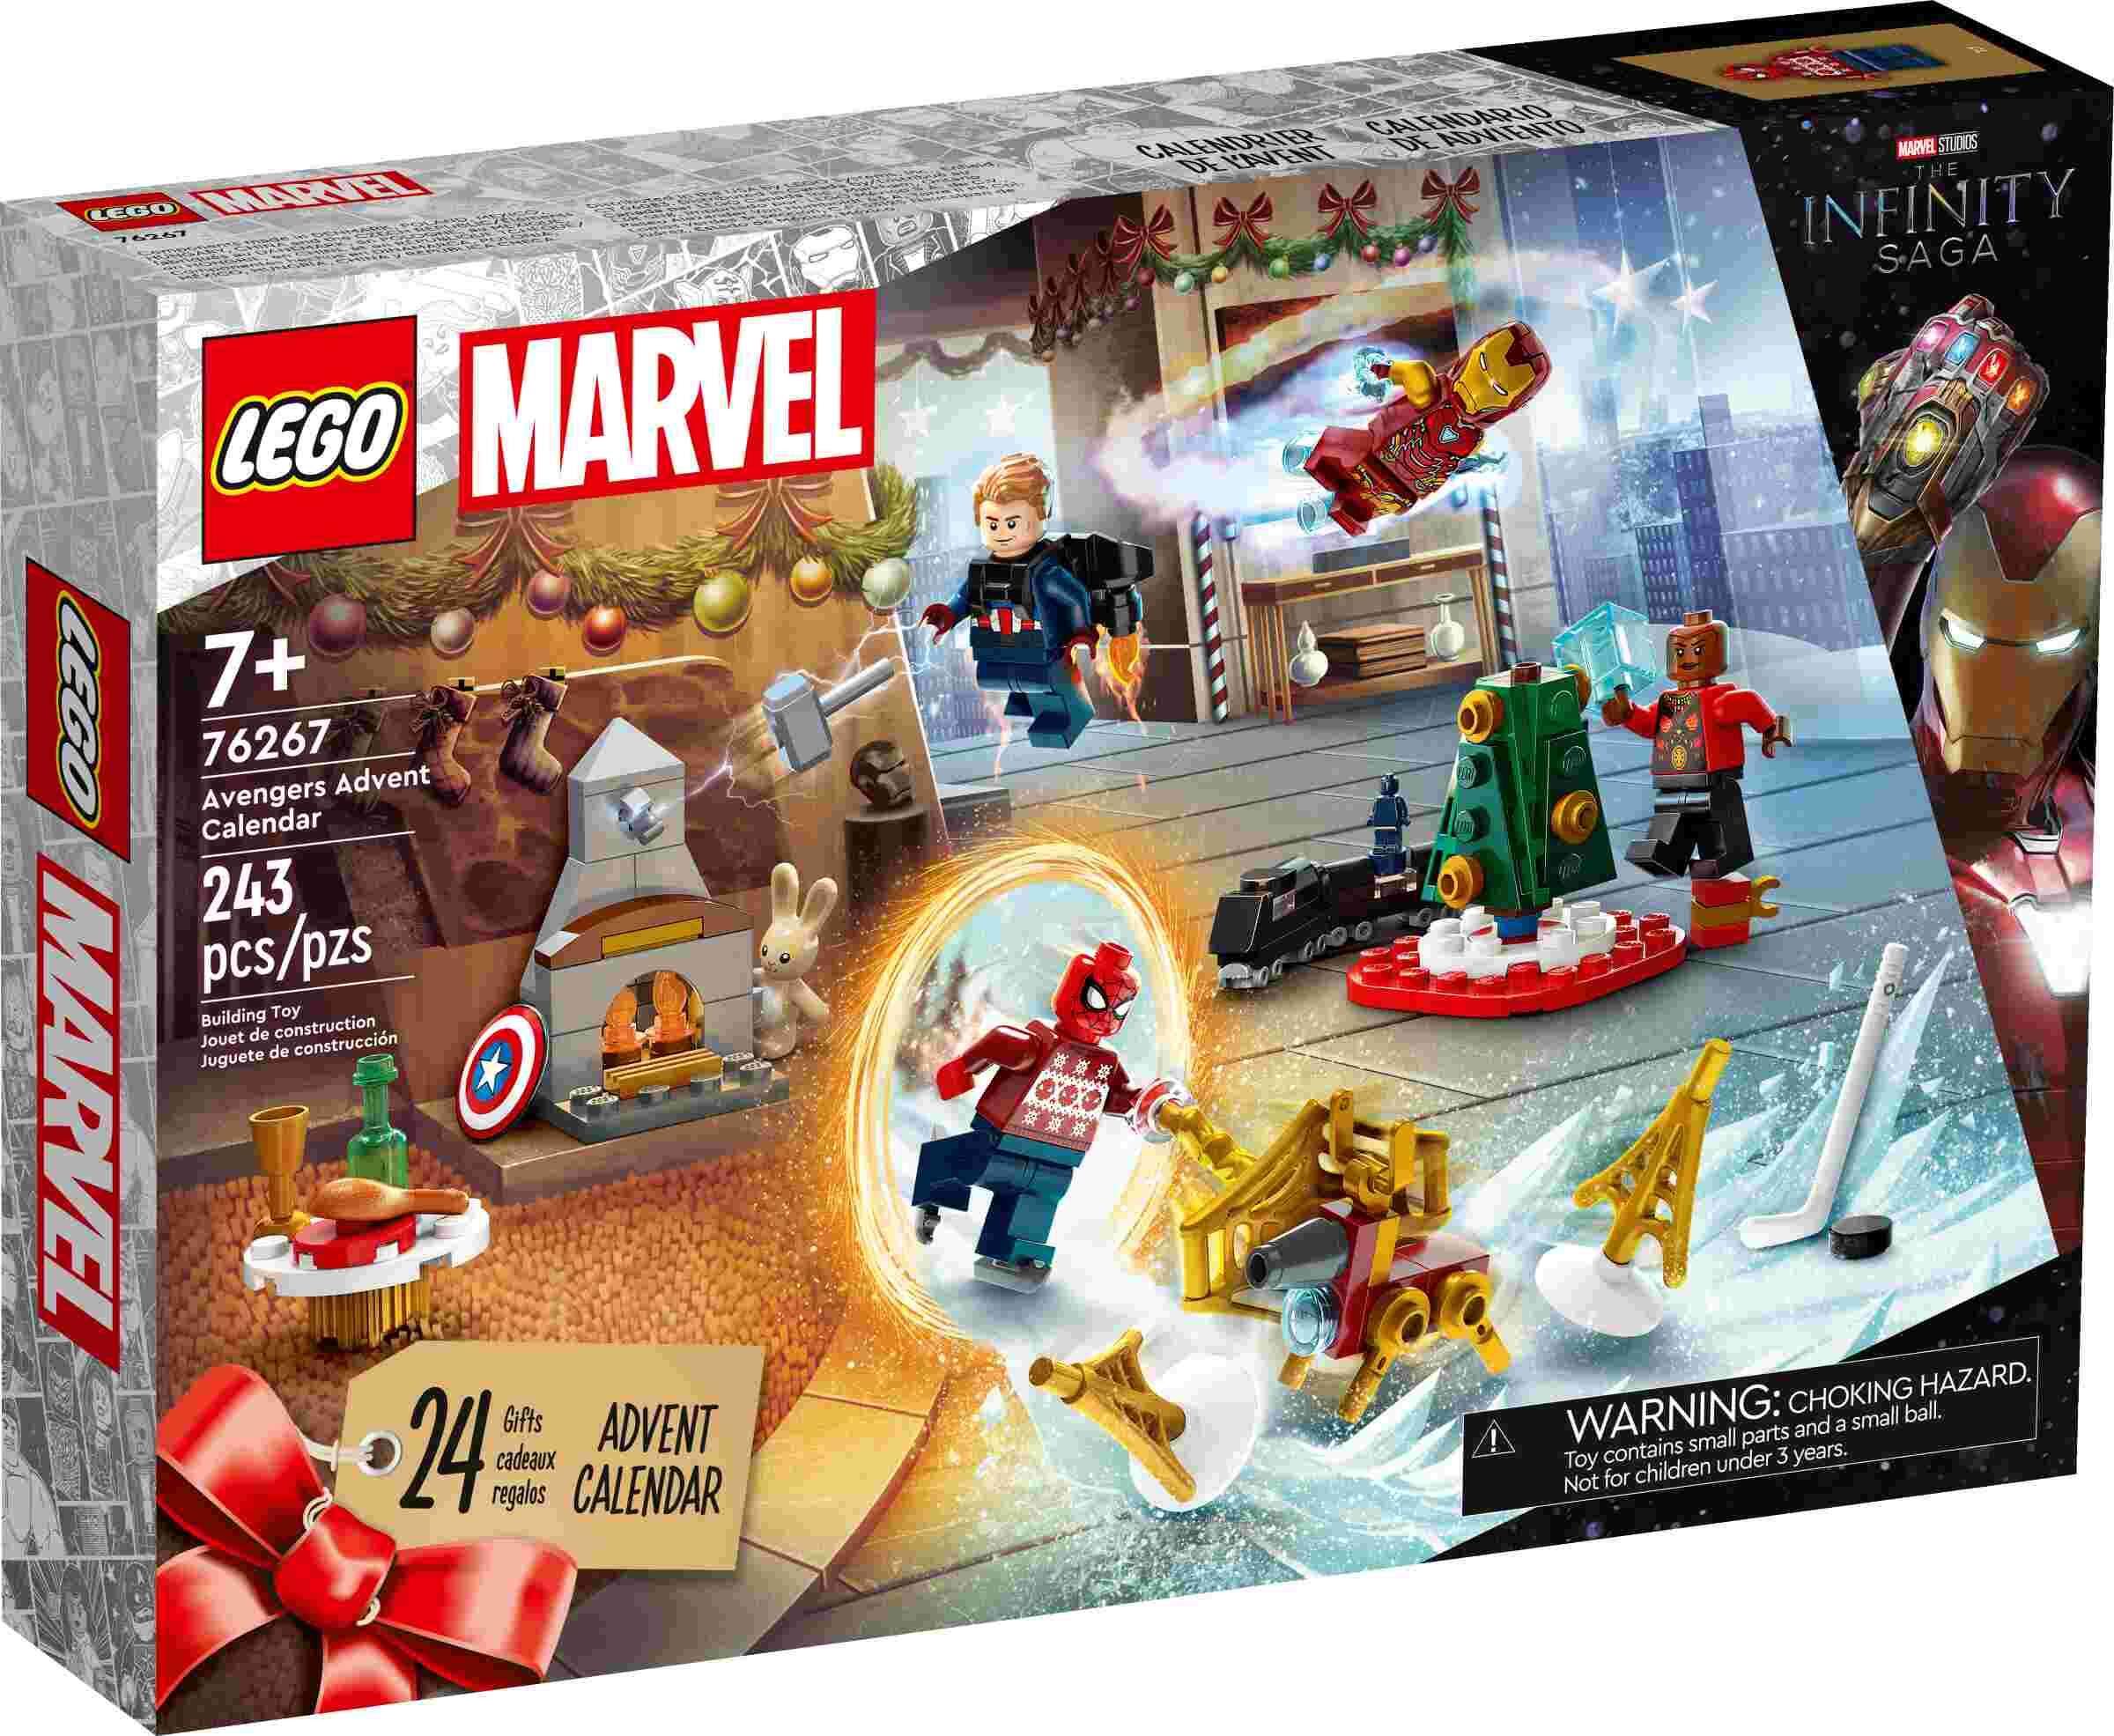 LEGO 76267 Marvel Super Heroes Avengers Adventskalender,  7 Minifiguren